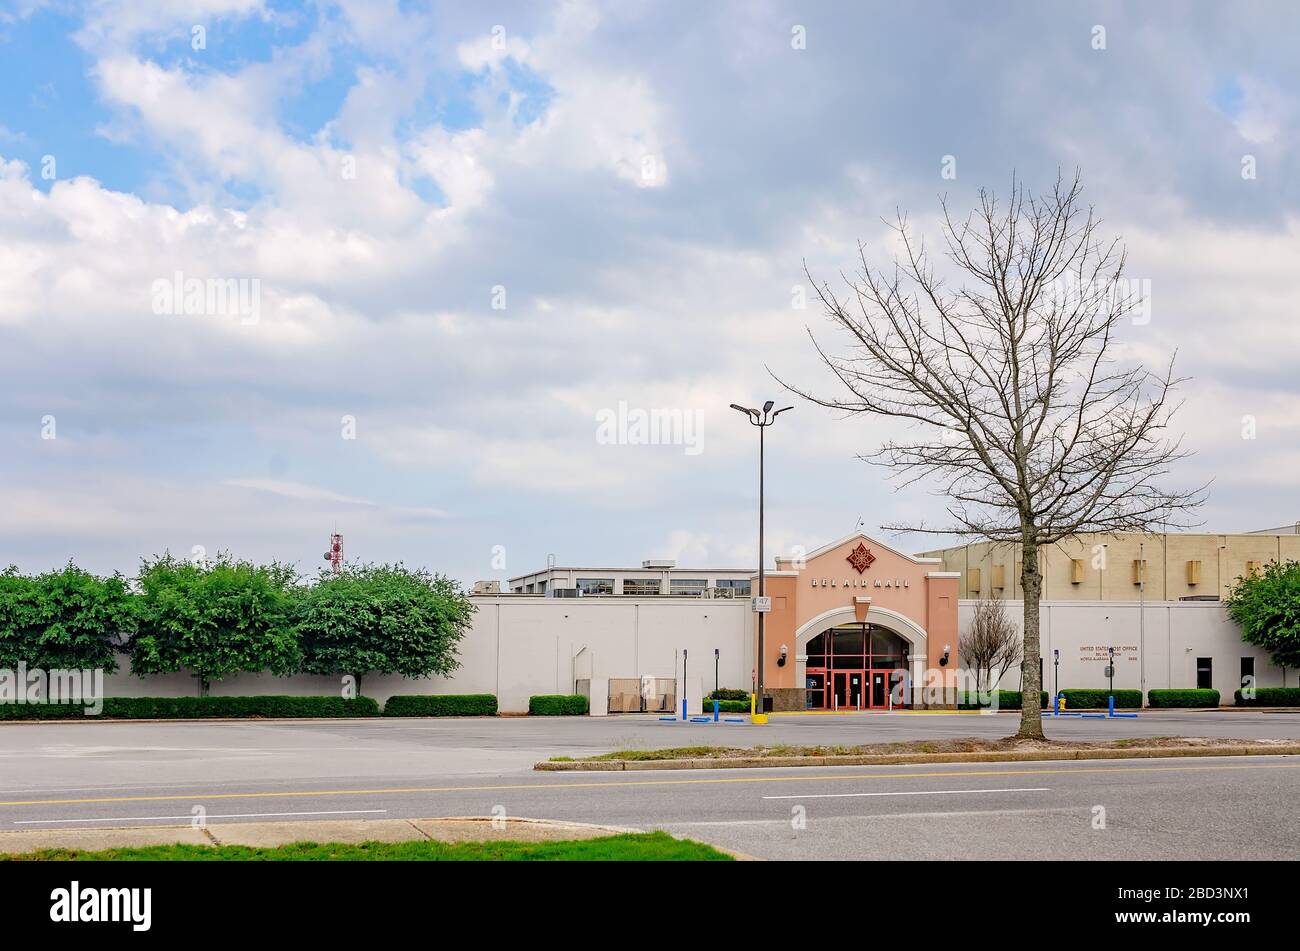 Le parking du Bel Air Mall est abandonné lors de la pandémie COVID-19, le 29 mars 2020, à Mobile, Alabama. Banque D'Images